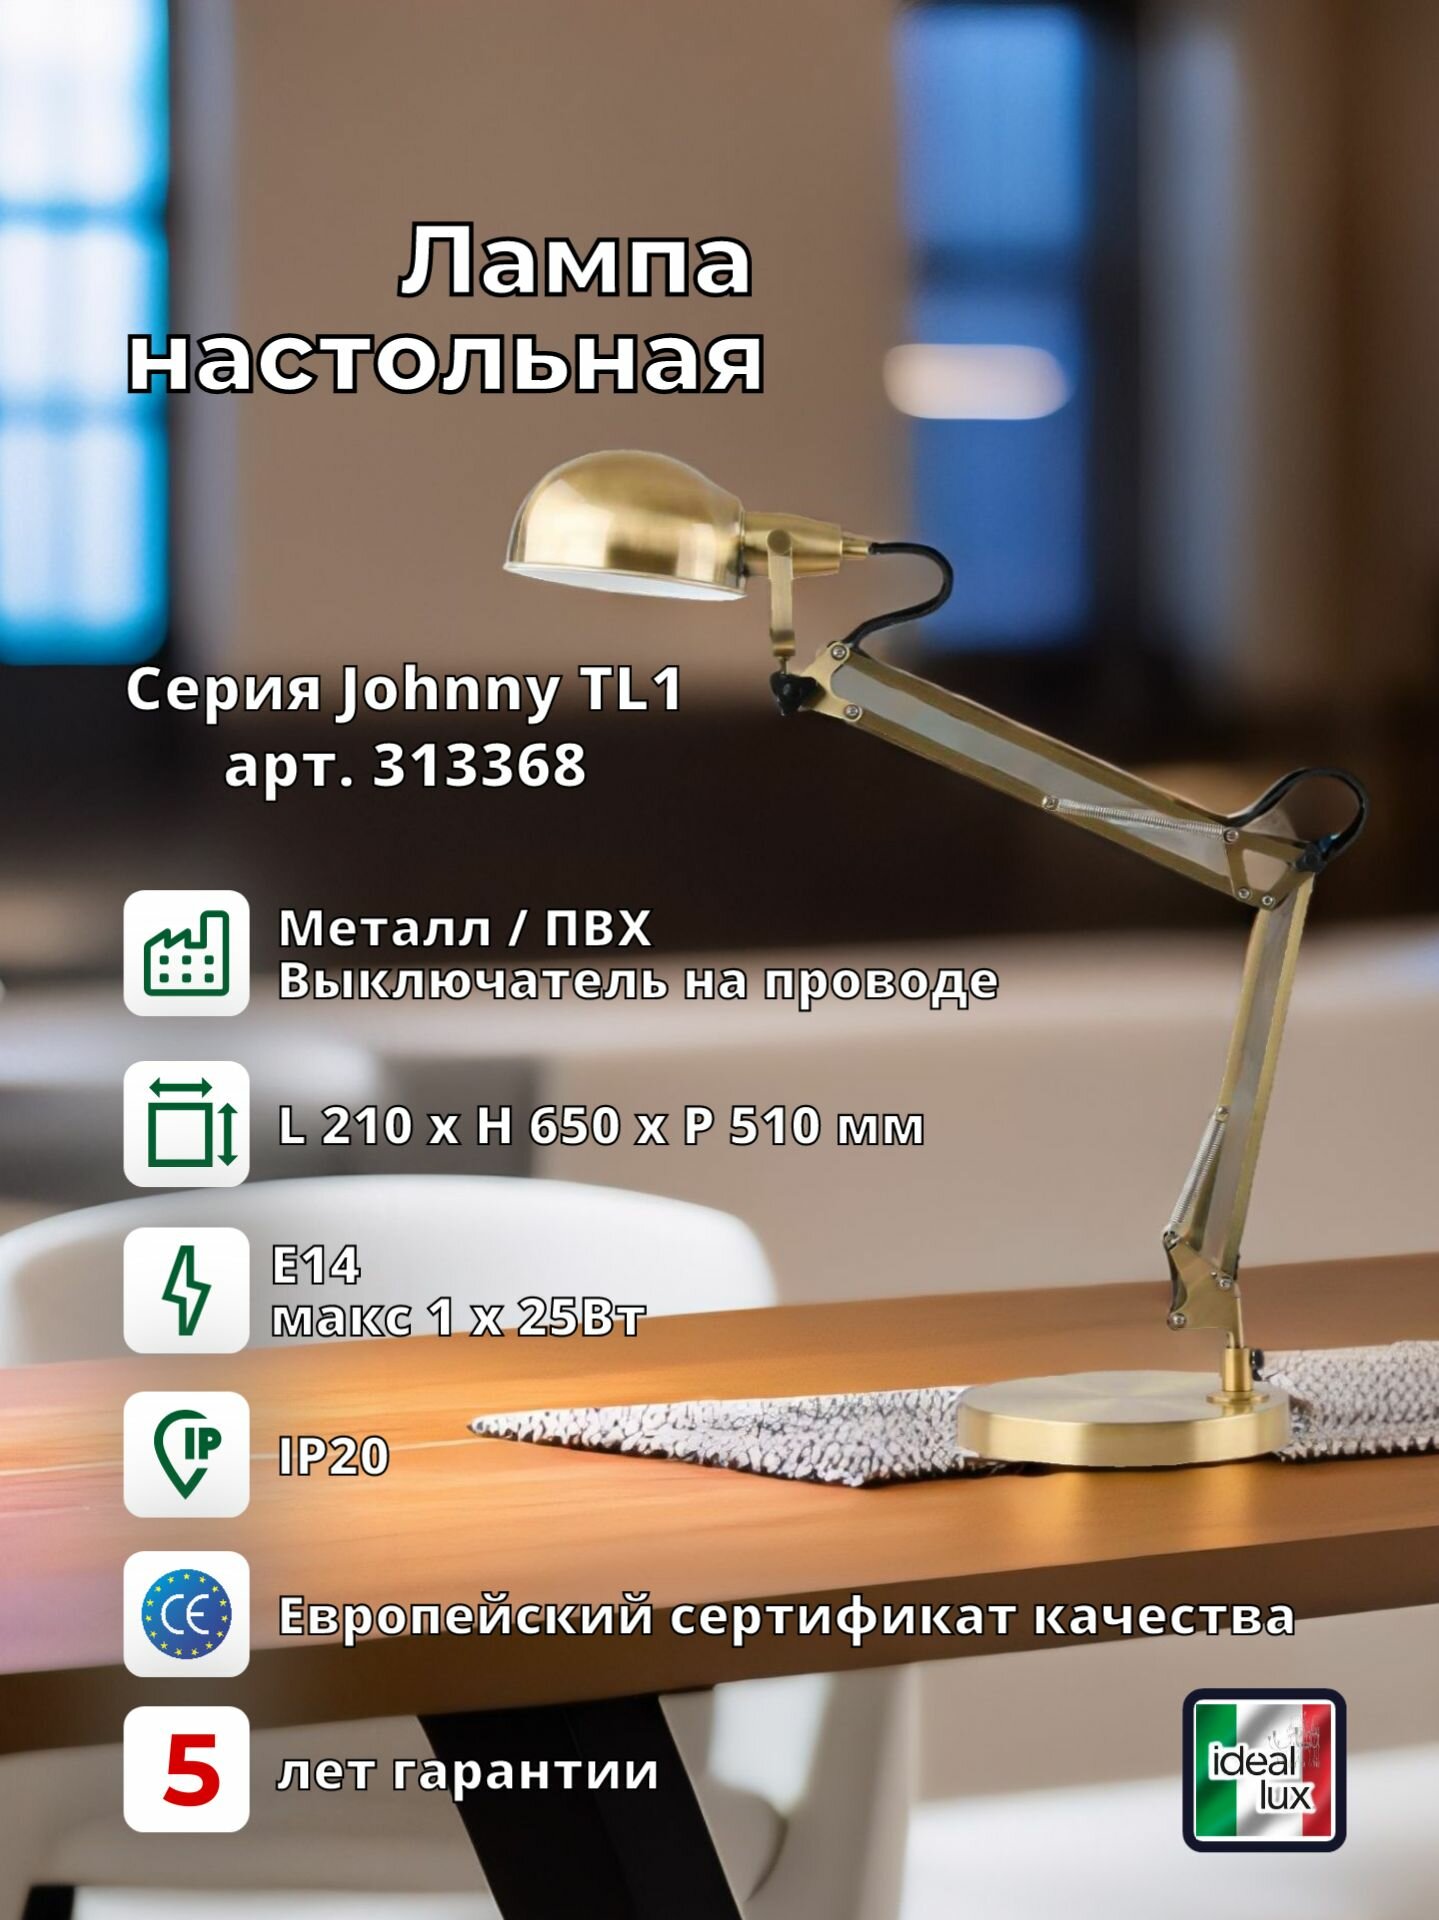 Лампа настольная ideal lux Johnny TL1 макс.1x25Вт E14 230В IP20 Латунь античная Металл Выключатель 313368.